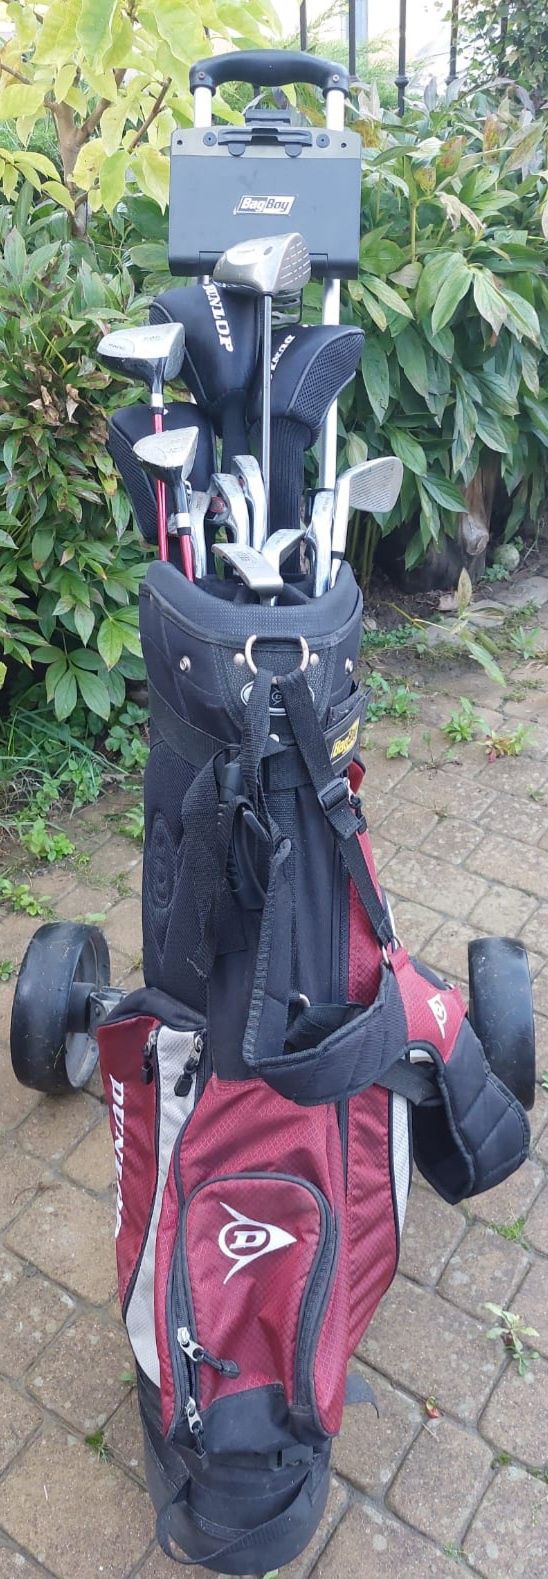 Zestaw kijów do golfa Dunlop ze zdejmowana torba na skladanym wózku